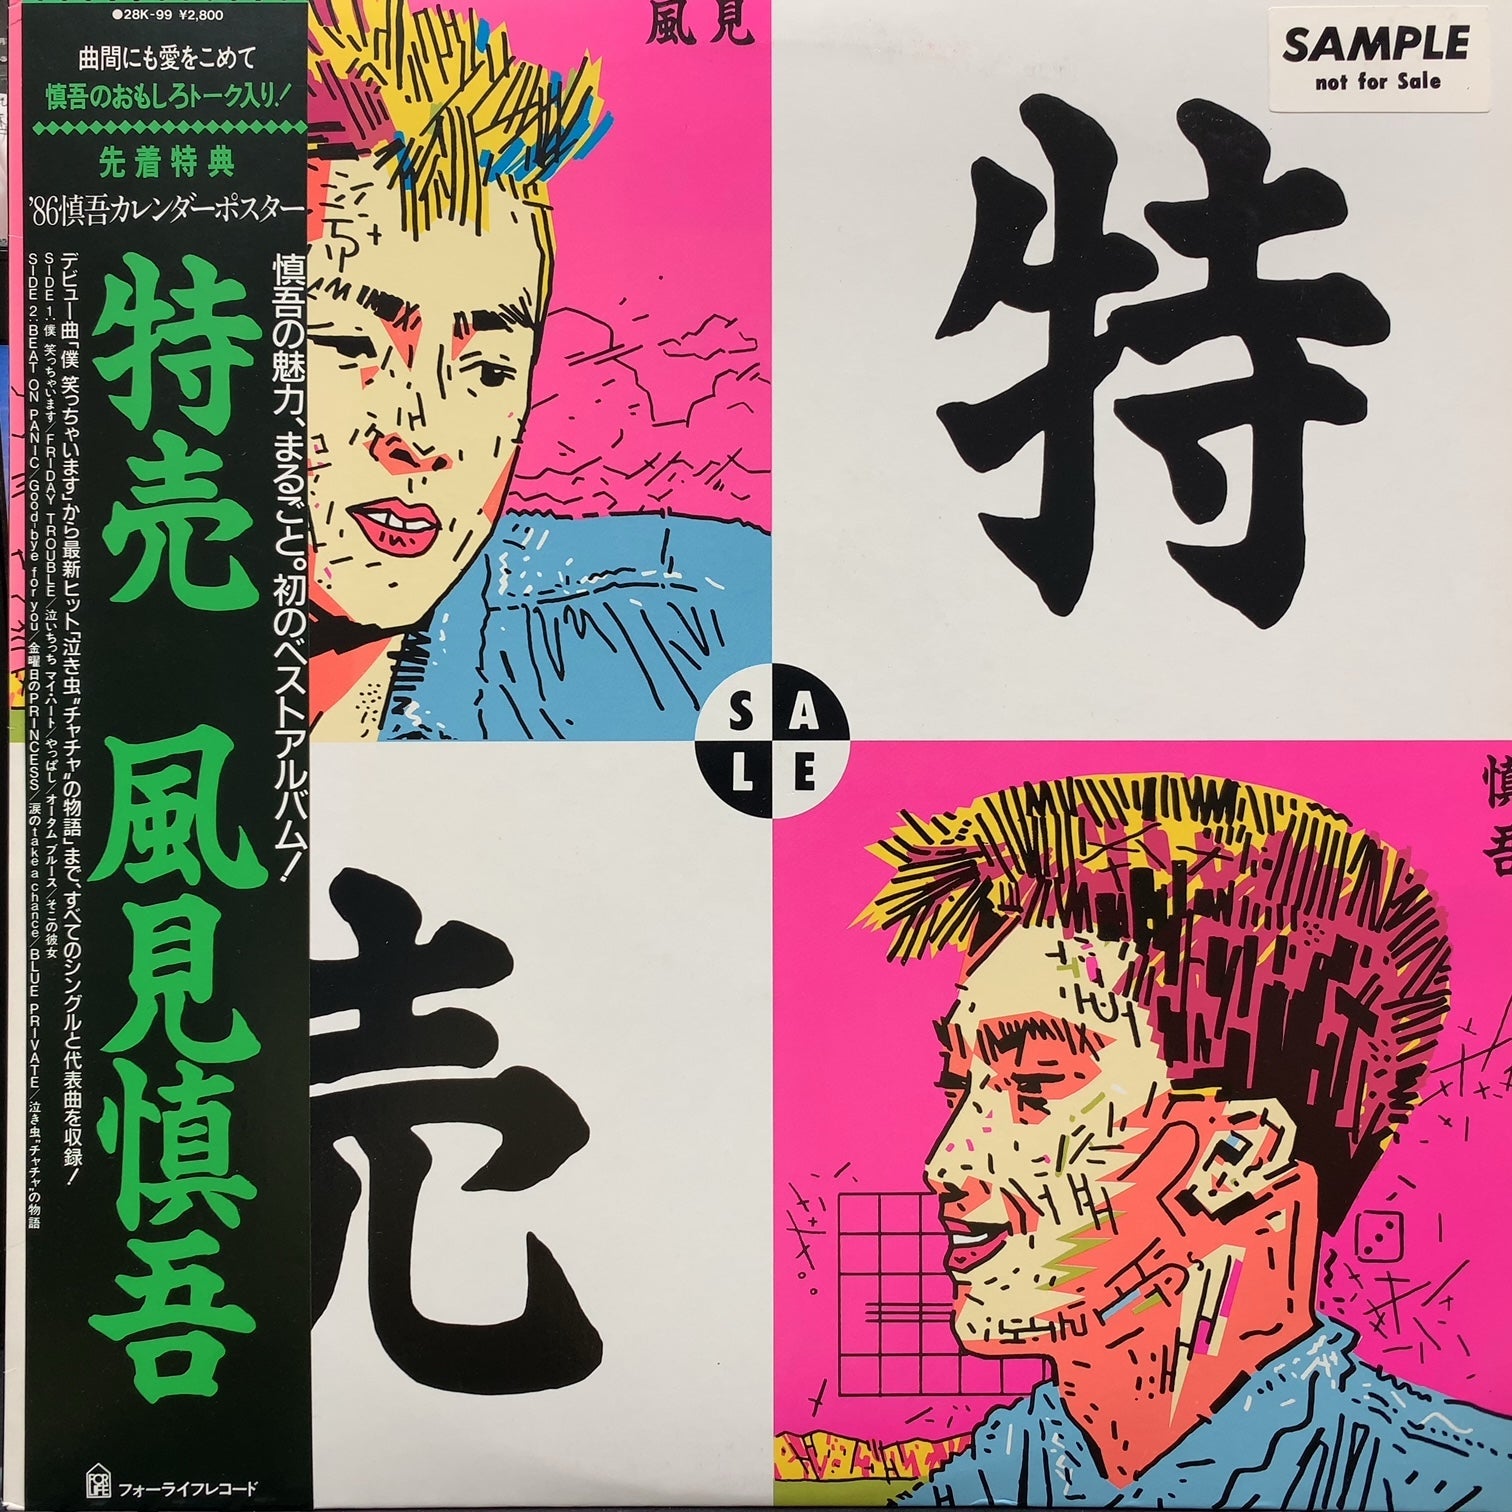 風見慎吾 / 特売 (28K-99, LP) 帯付 – TICRO MARKET